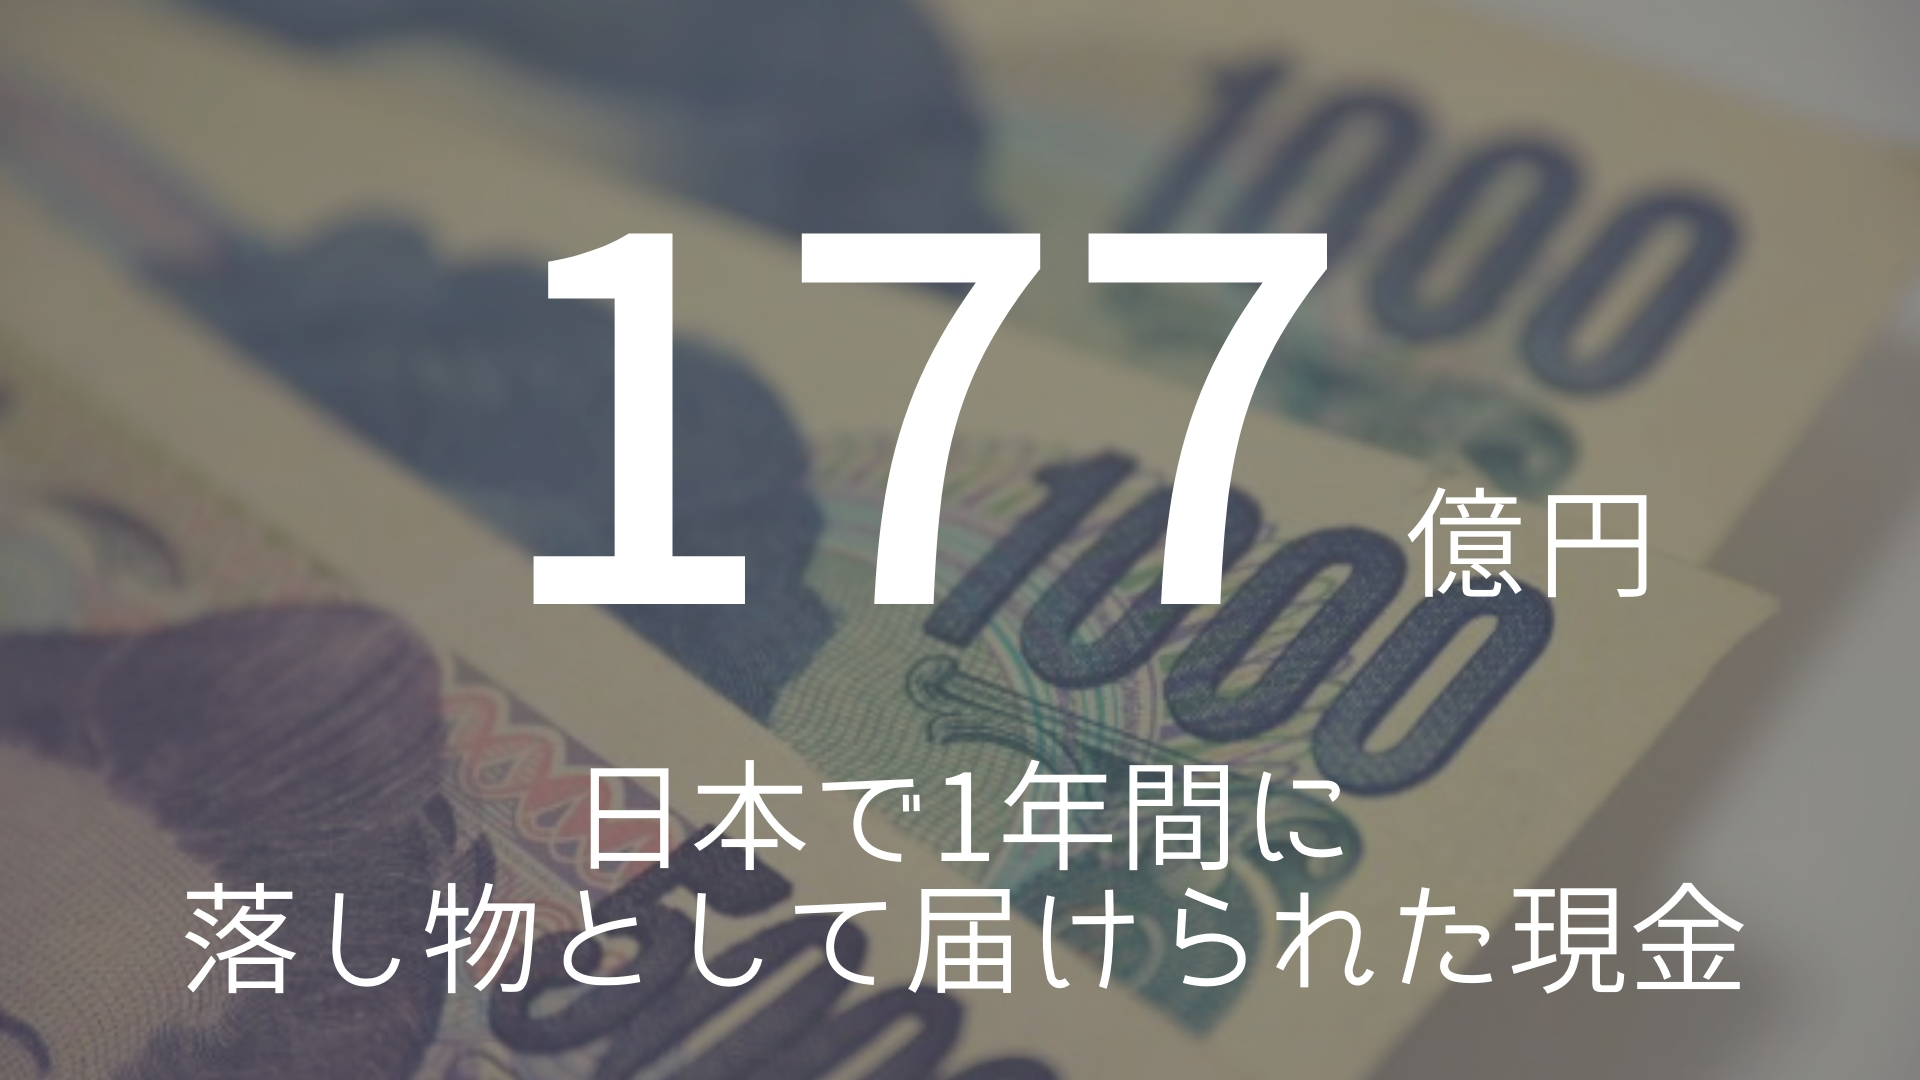 「177億円」 >>> 日本で1年間に落し物として届けられた現金。